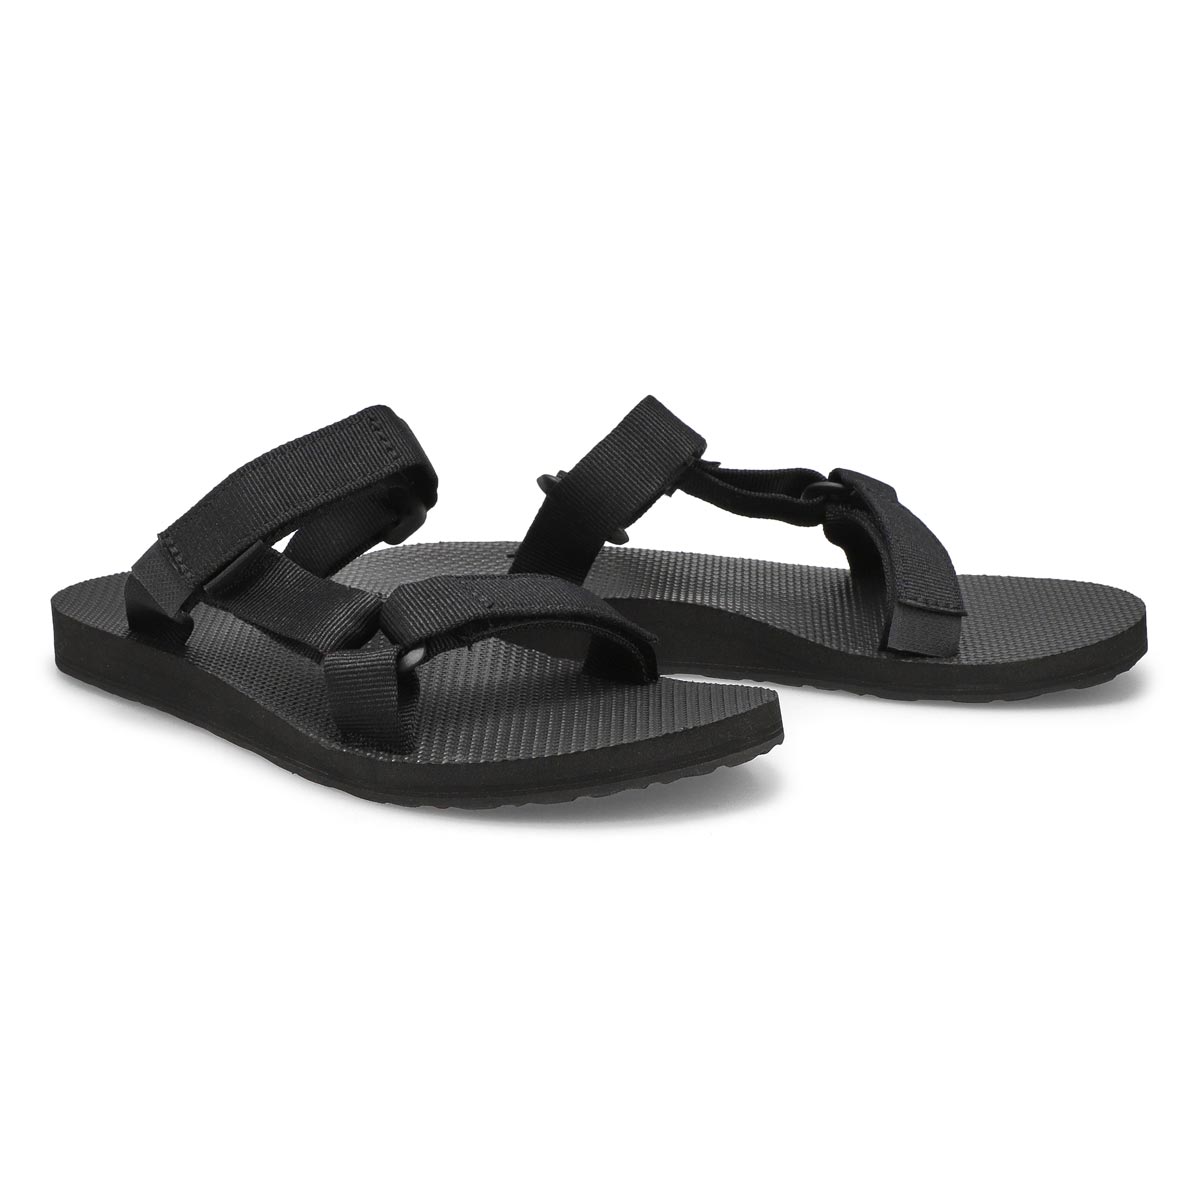 Women's Universal Slide Sandal - Black